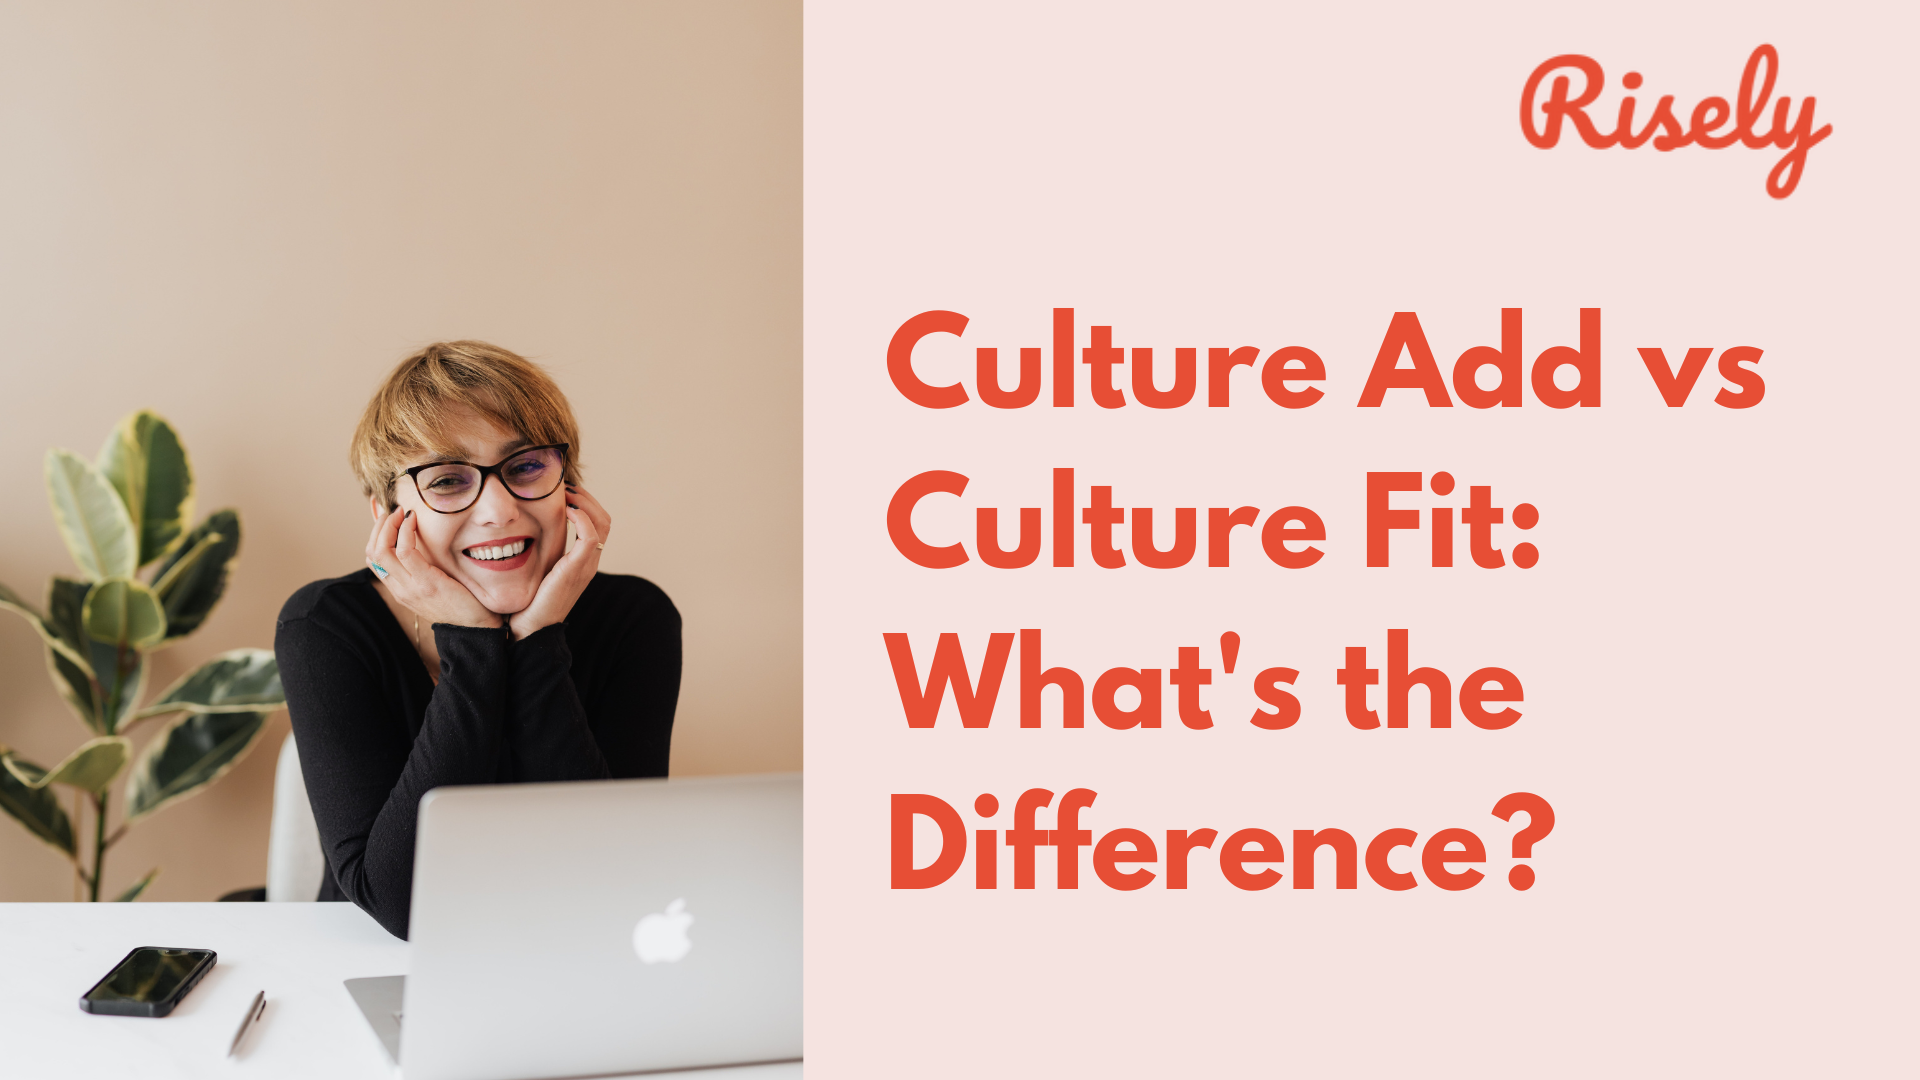 Culture Add vs Culture Fit